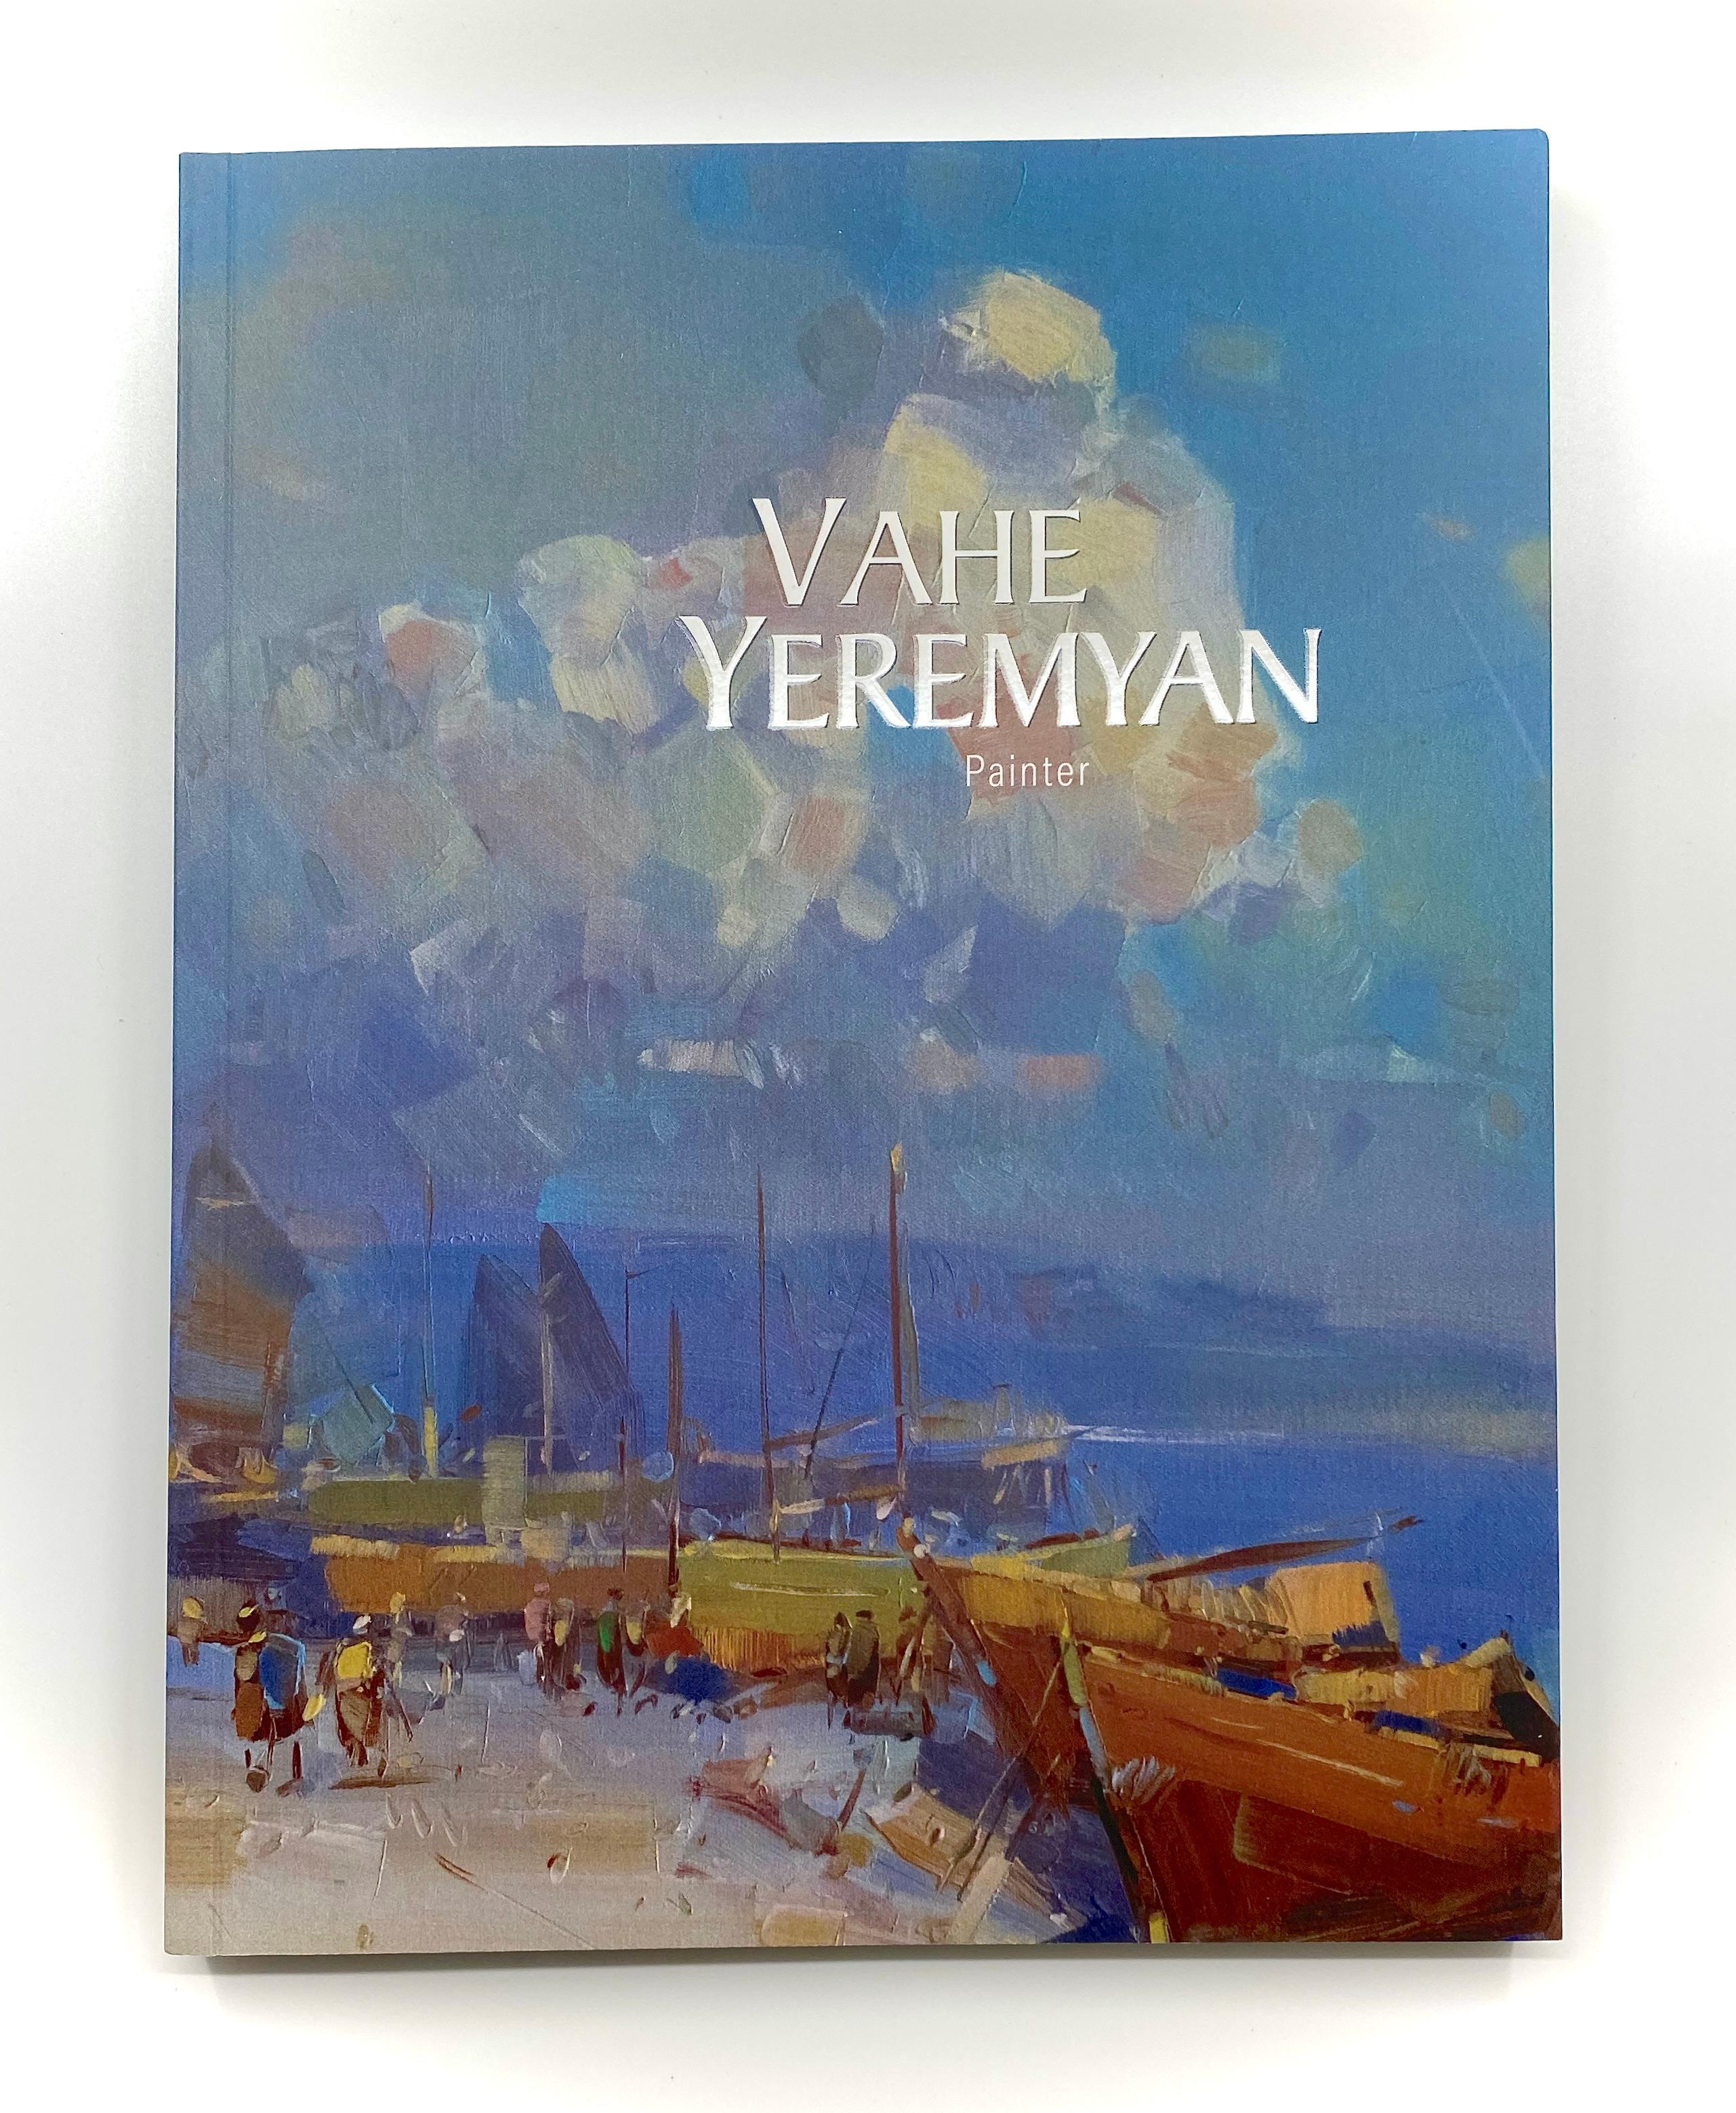 Künstler: Vahe Yeremyan
Tigran Mets Publishing House 1. Auflage, 2021
ISBN: 978-99941-0-994-4 
Buch Abmessungen: 9.5x12.5x0.8 inch, 24x32x2 cm, 2 Lb, 167 Seiten,